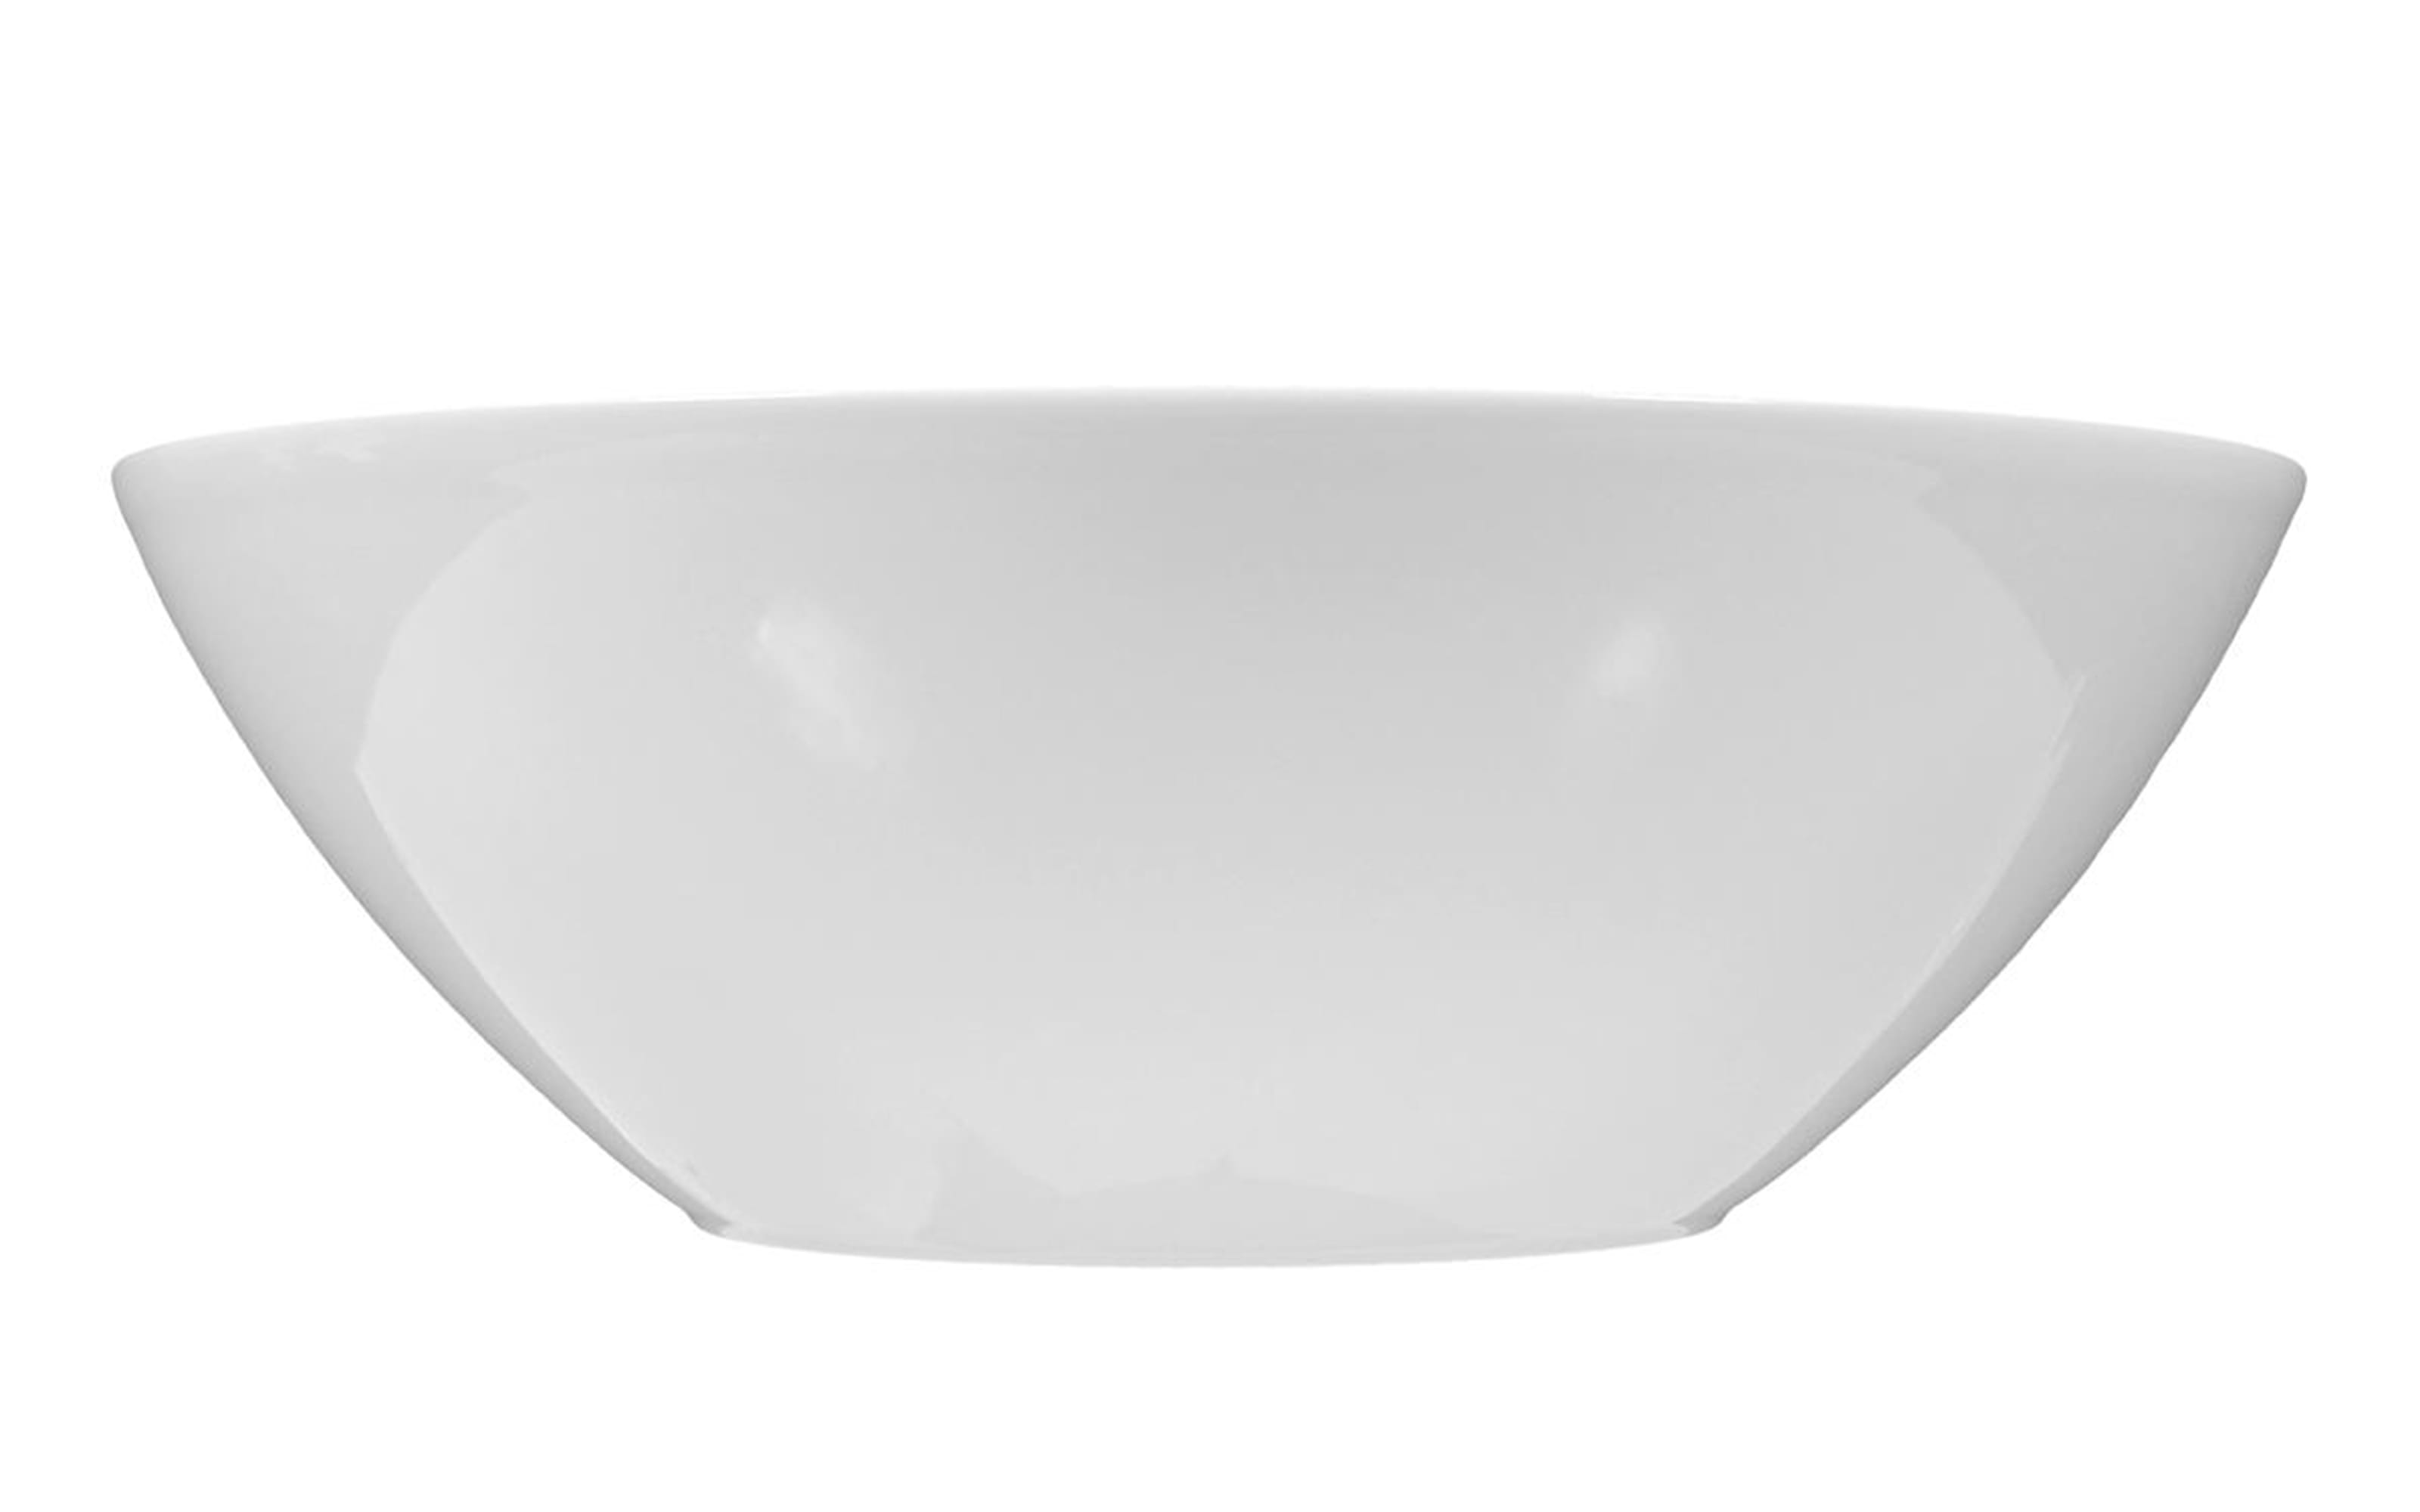 Schüssel Rondo Liane in weiß, 25 cm